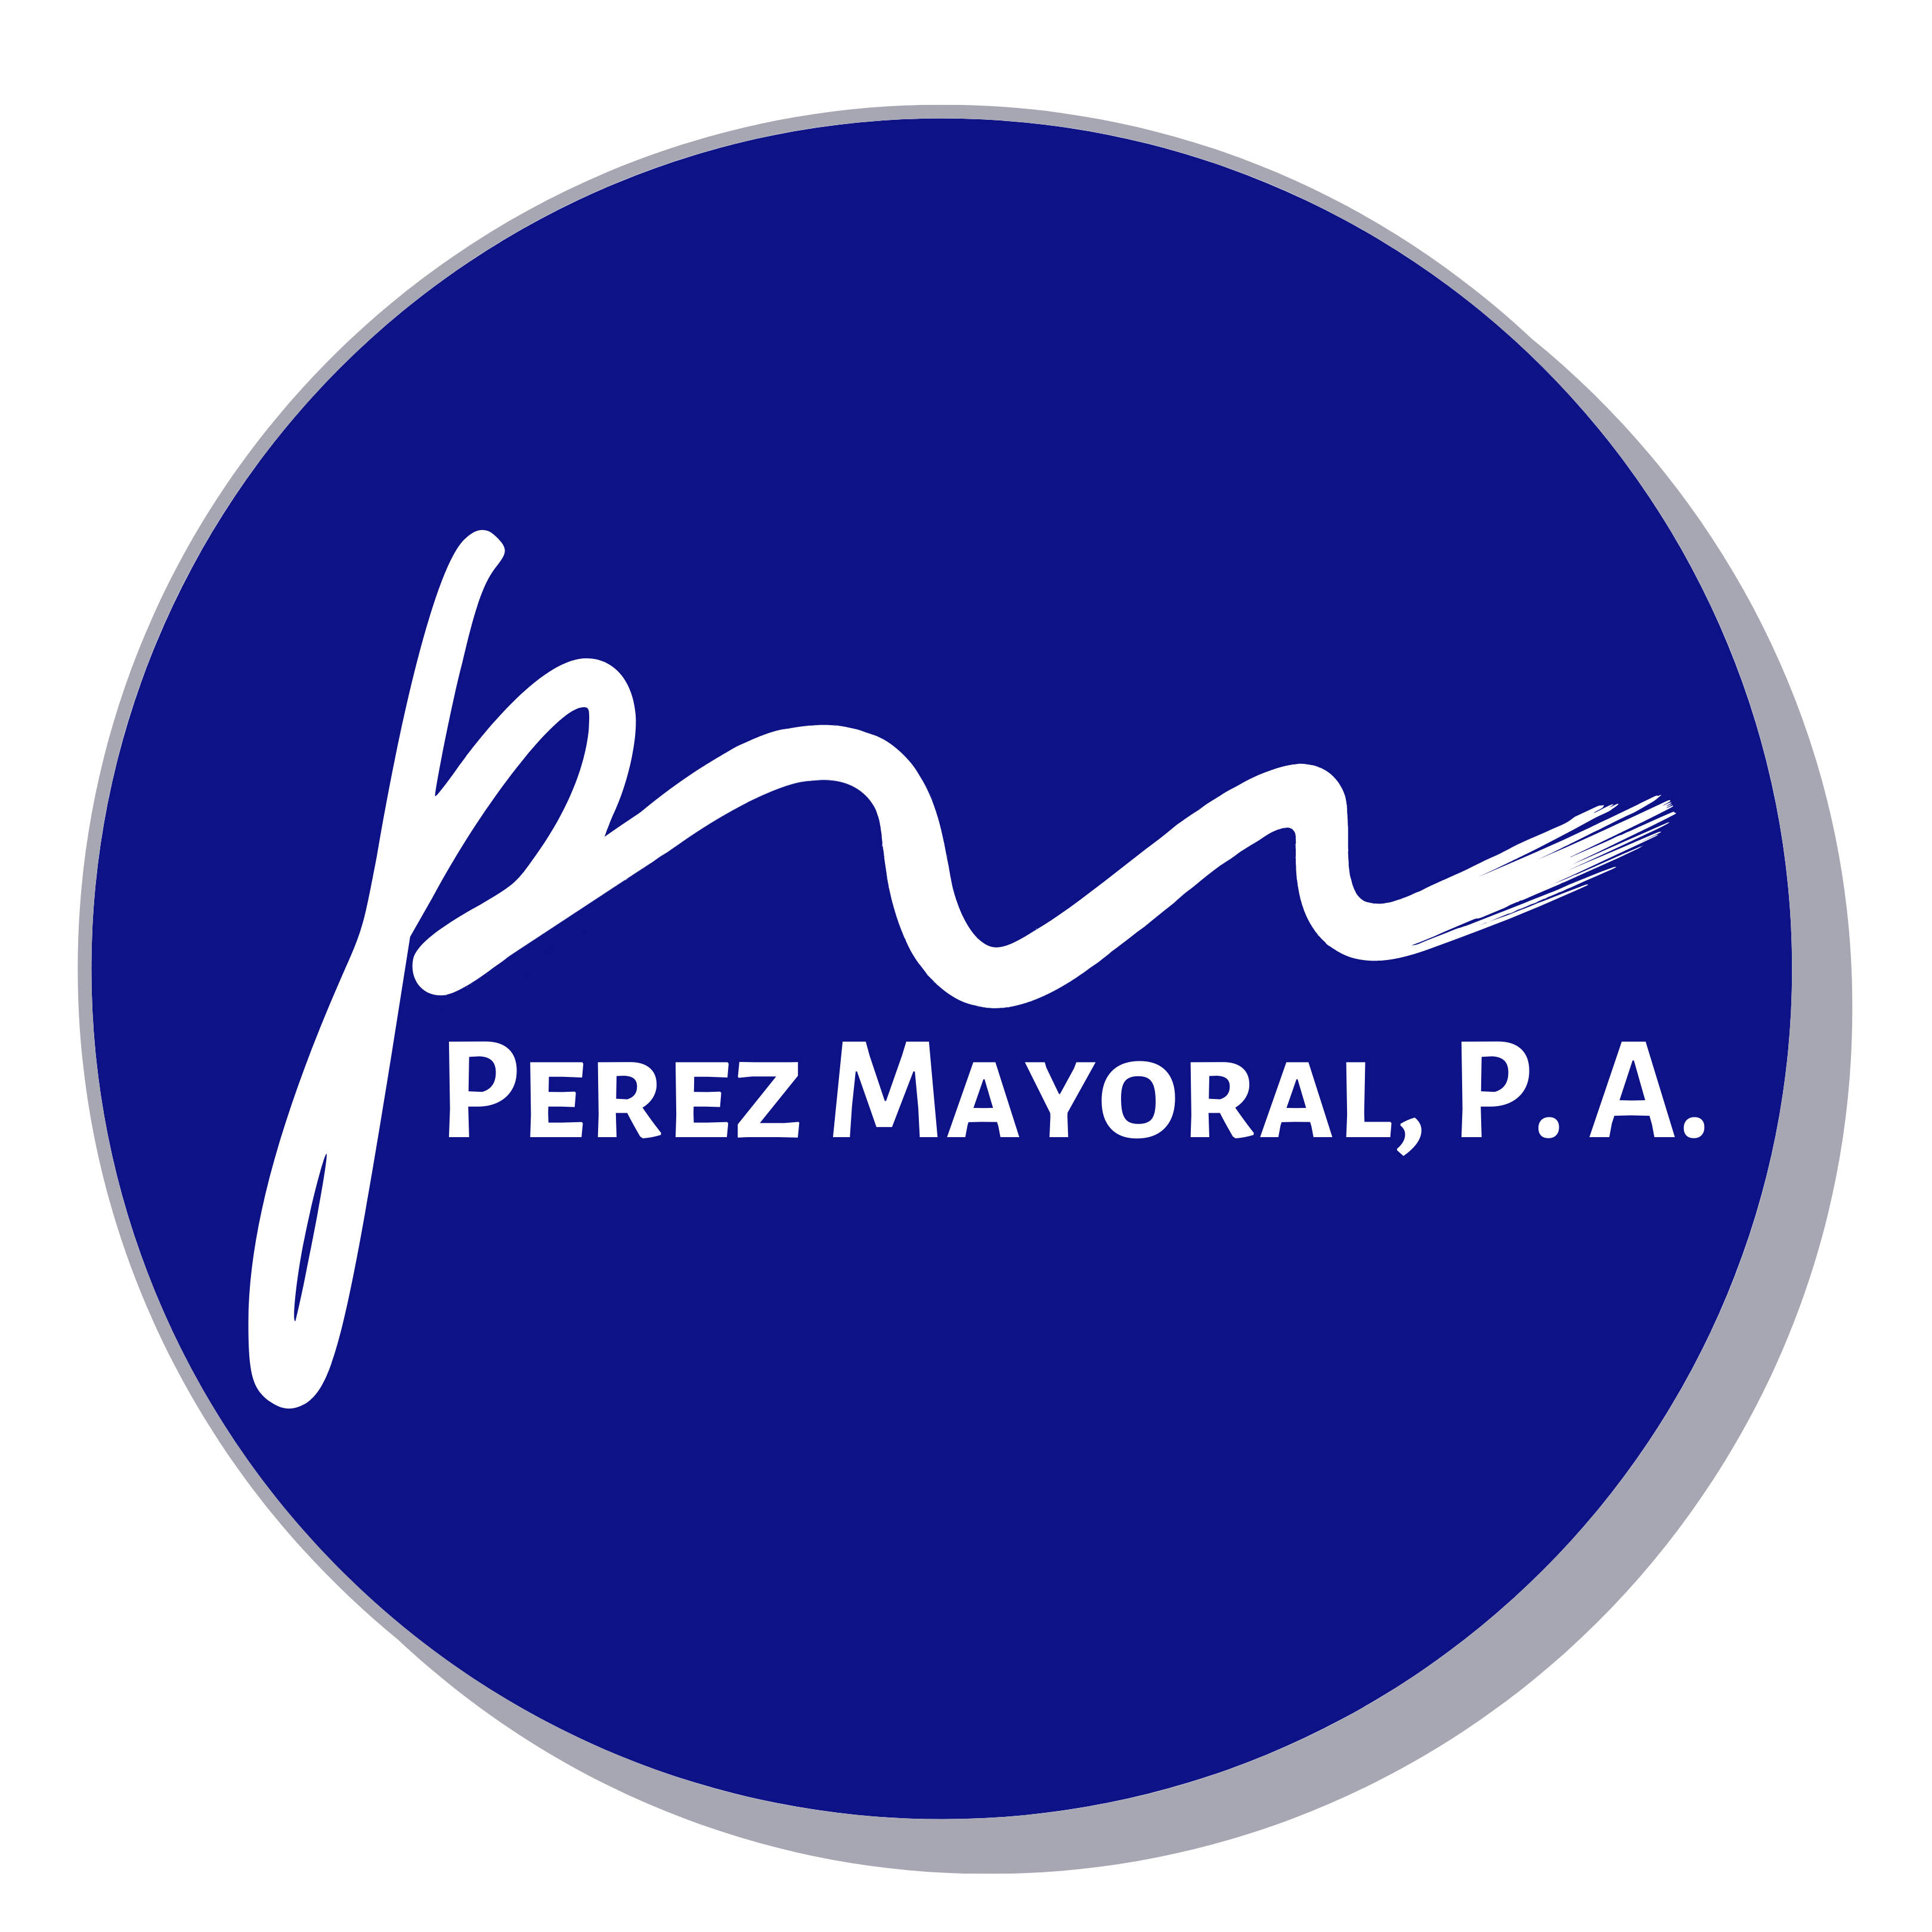 Image of Perez Mayora